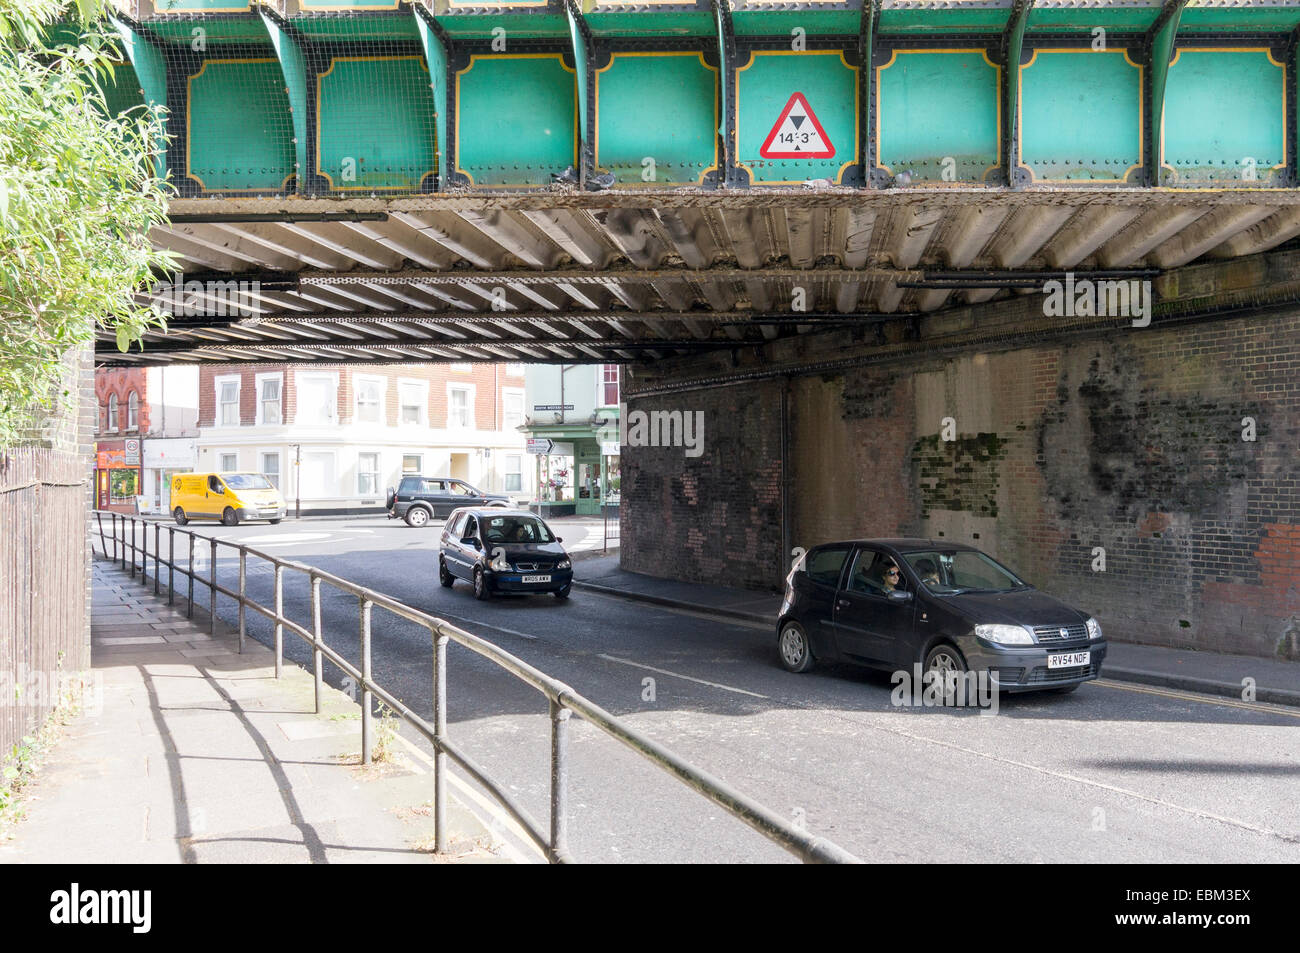 Automóviles circulando bajo el puente de hierro con aviso de limitación de altura Foto de stock